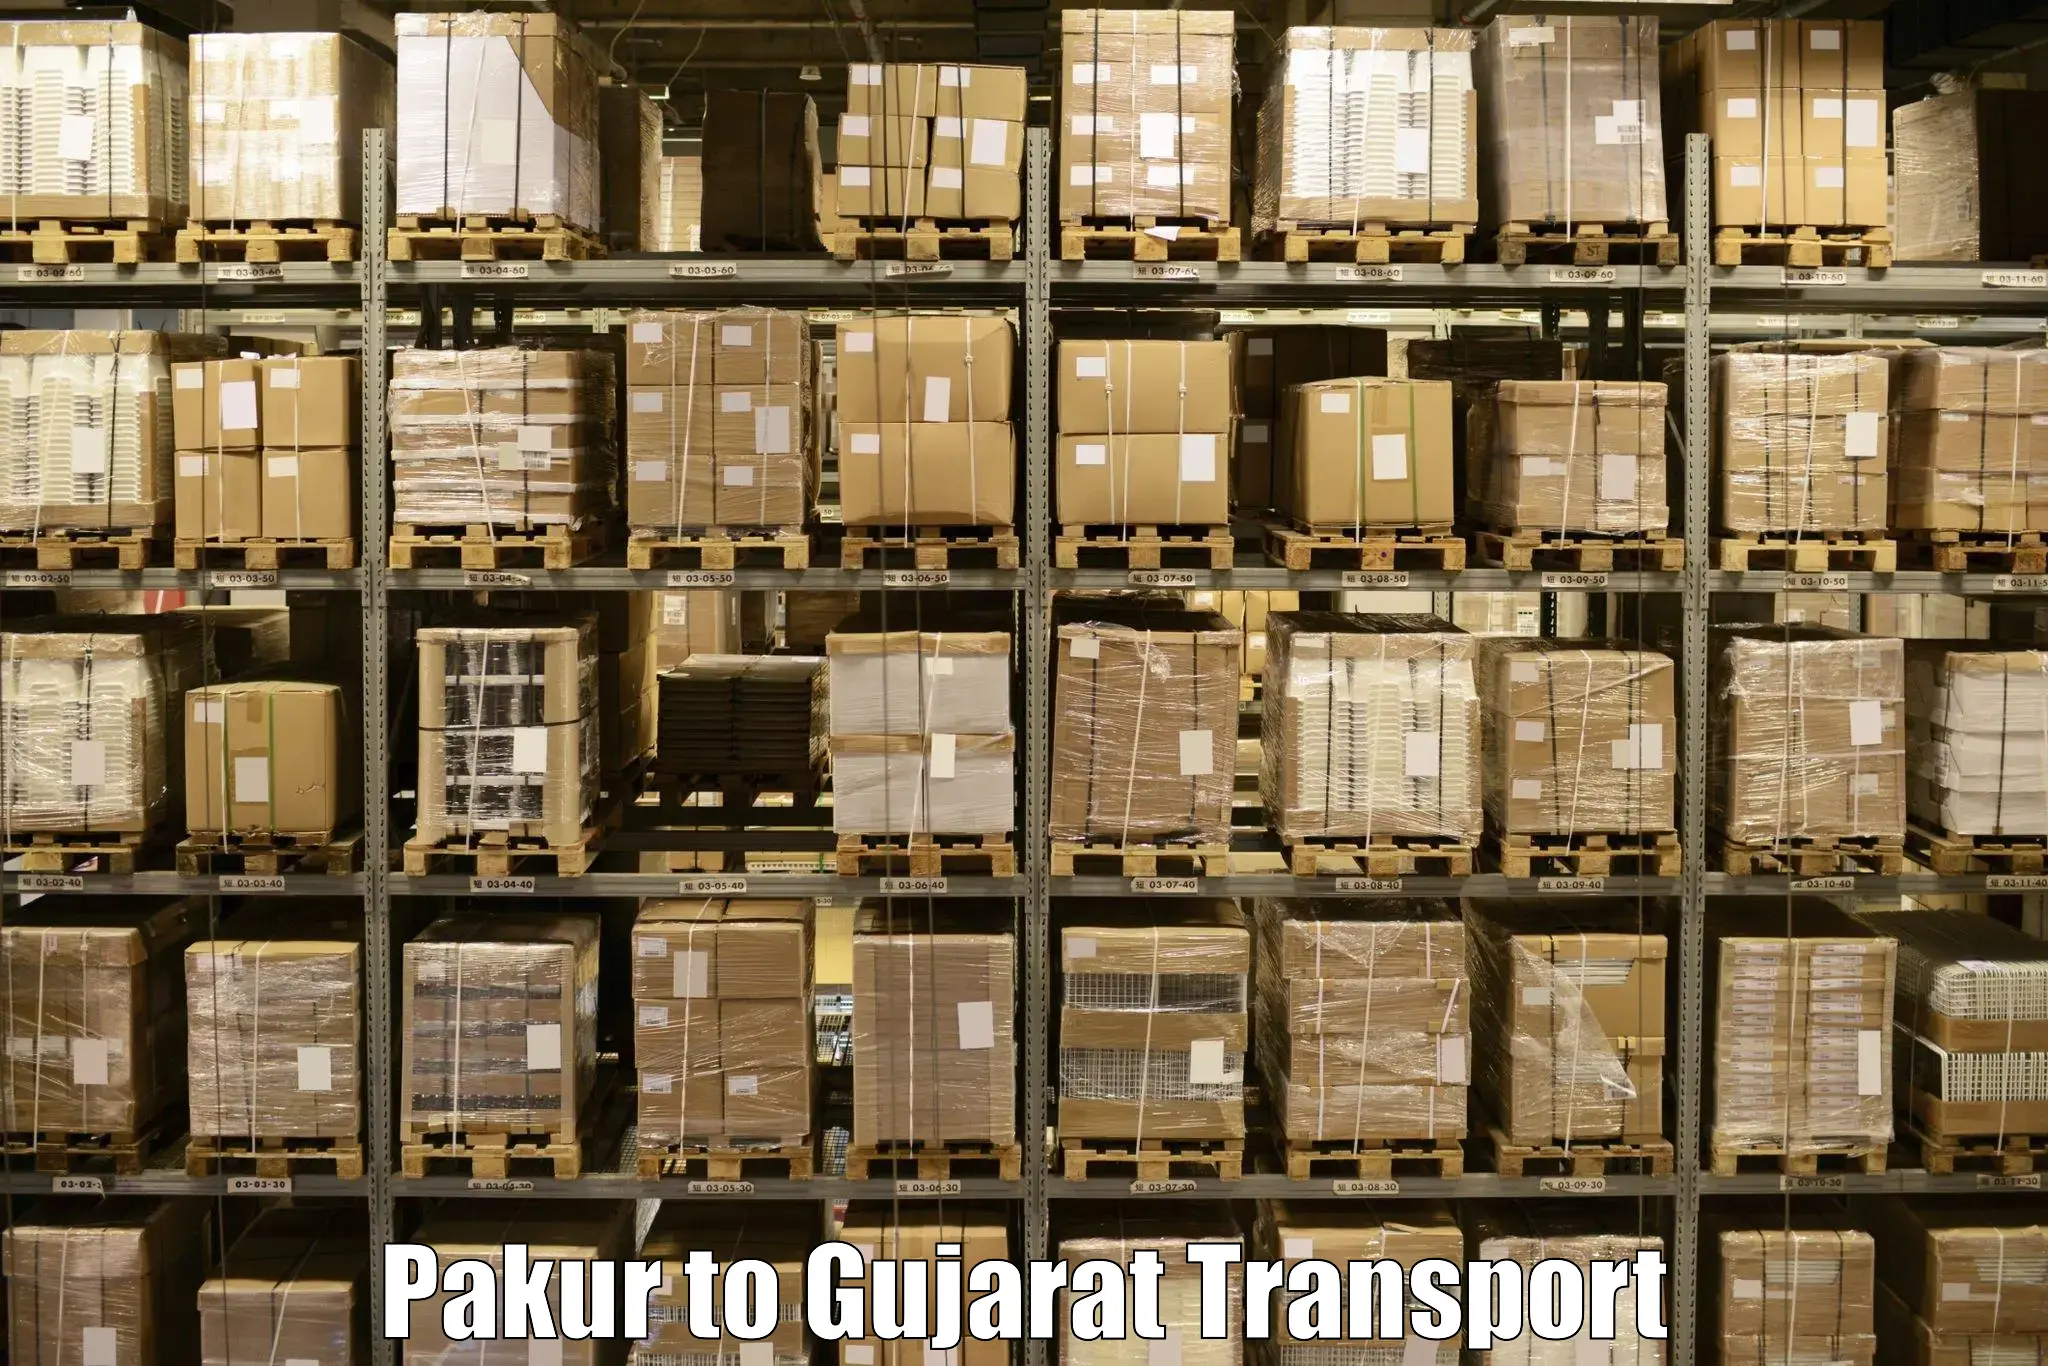 Nearby transport service Pakur to Dahej